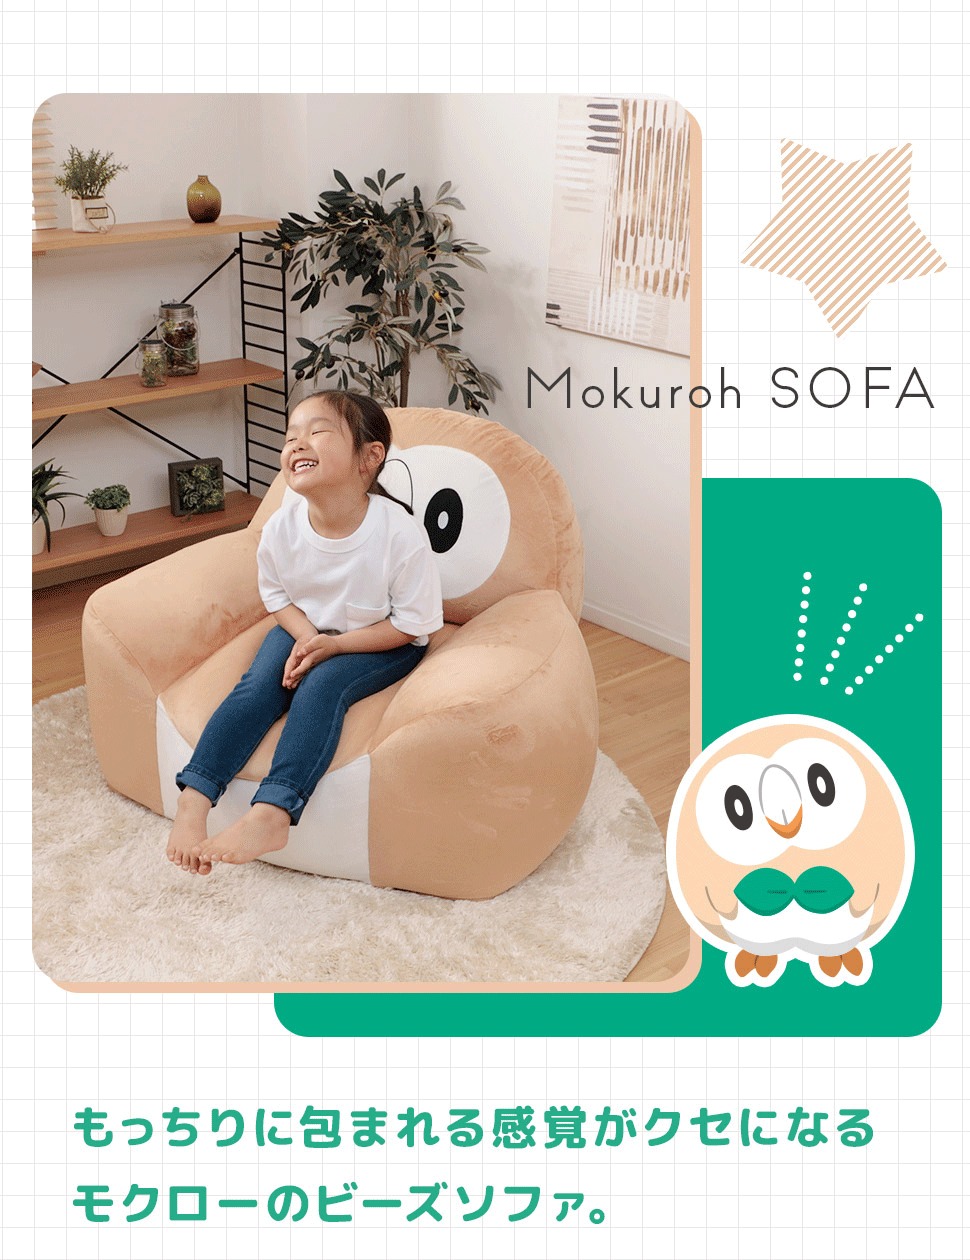 Pokémon: ¡Un sofa inspirado en Rowlet ha sido anunciado en Japón! 42